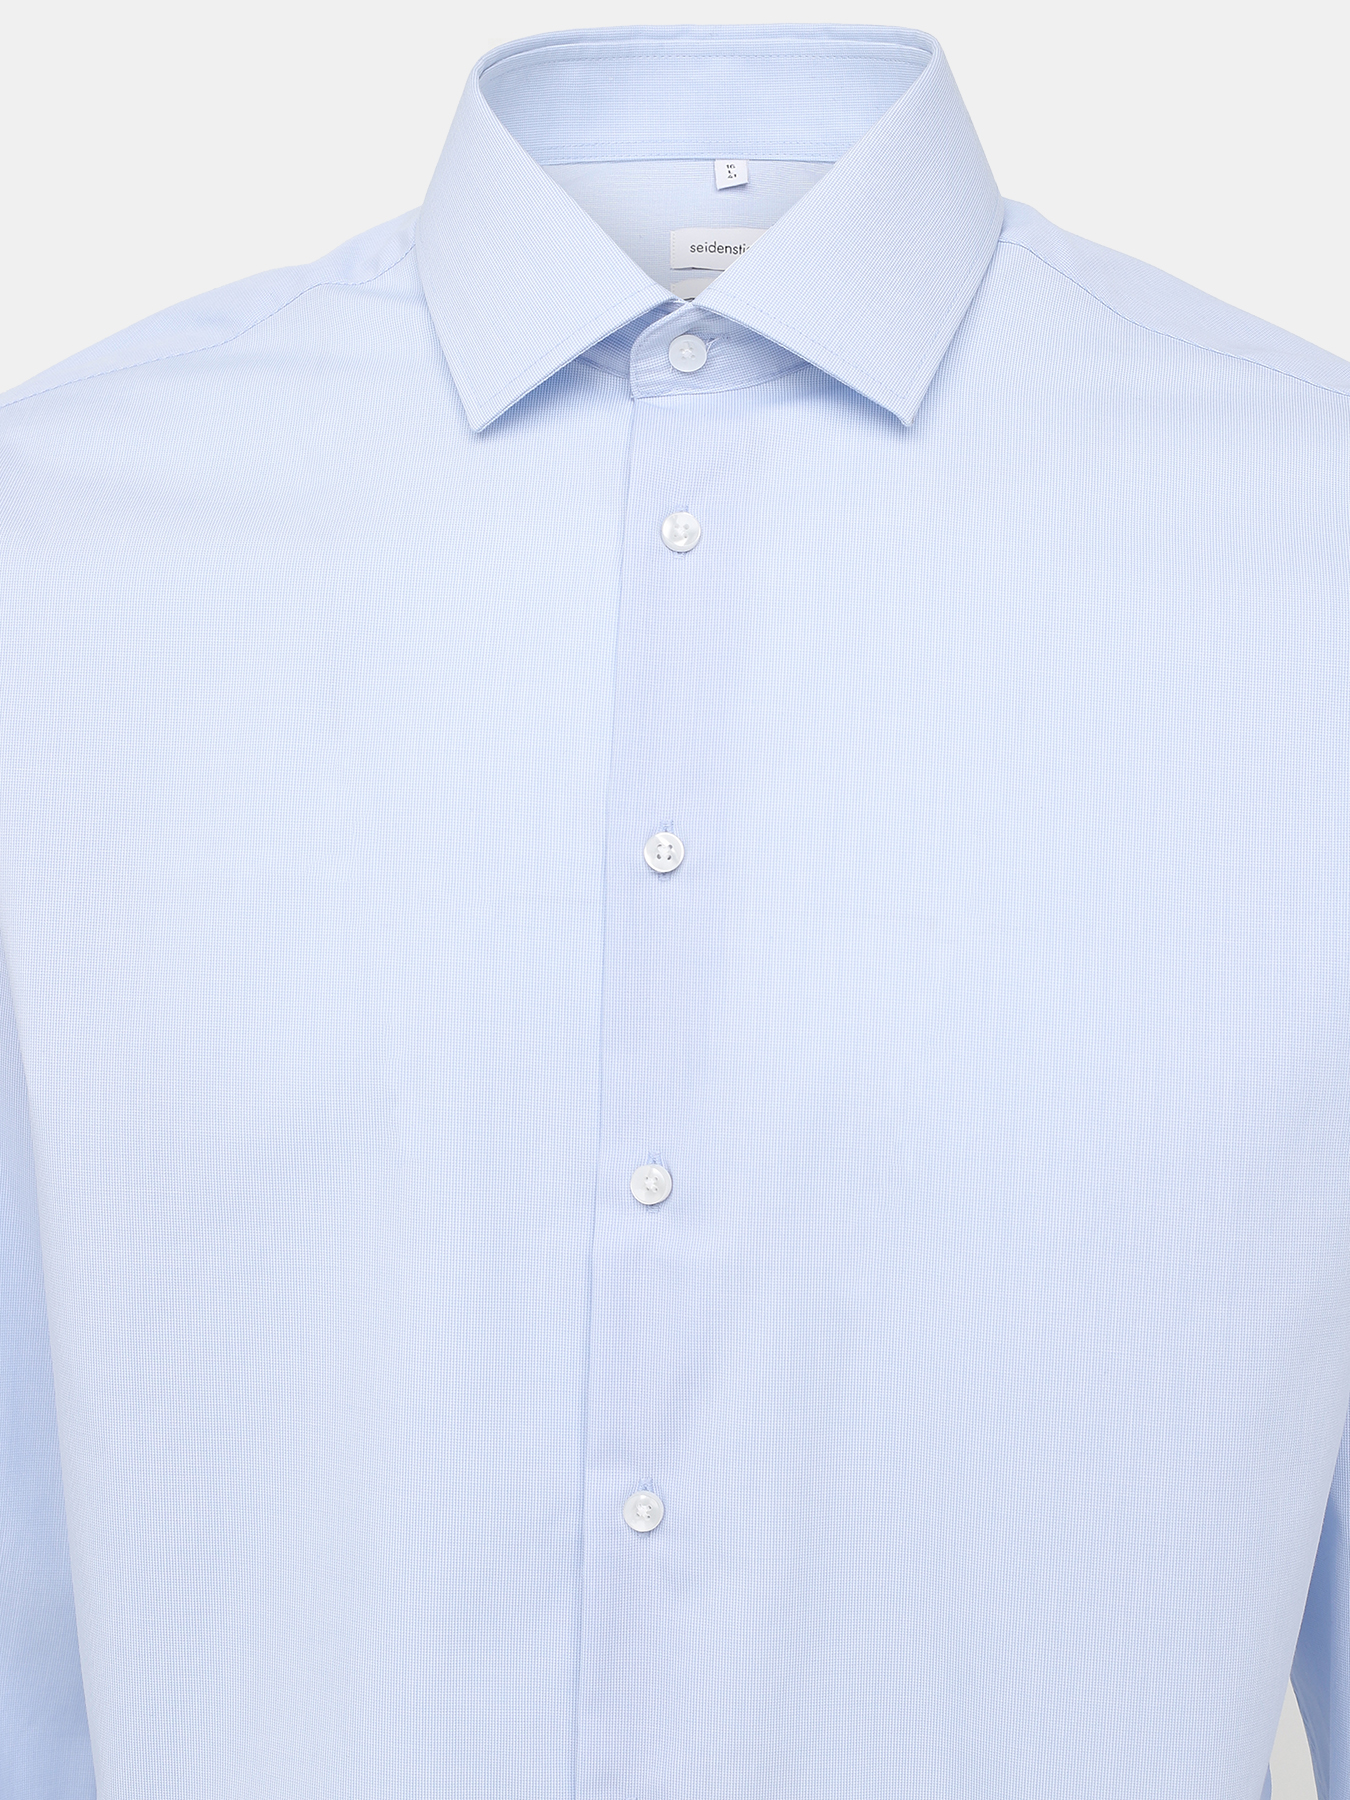 Хлопковая рубашка Seidensticker 429272-021, цвет голубой, размер 50 - фото 3